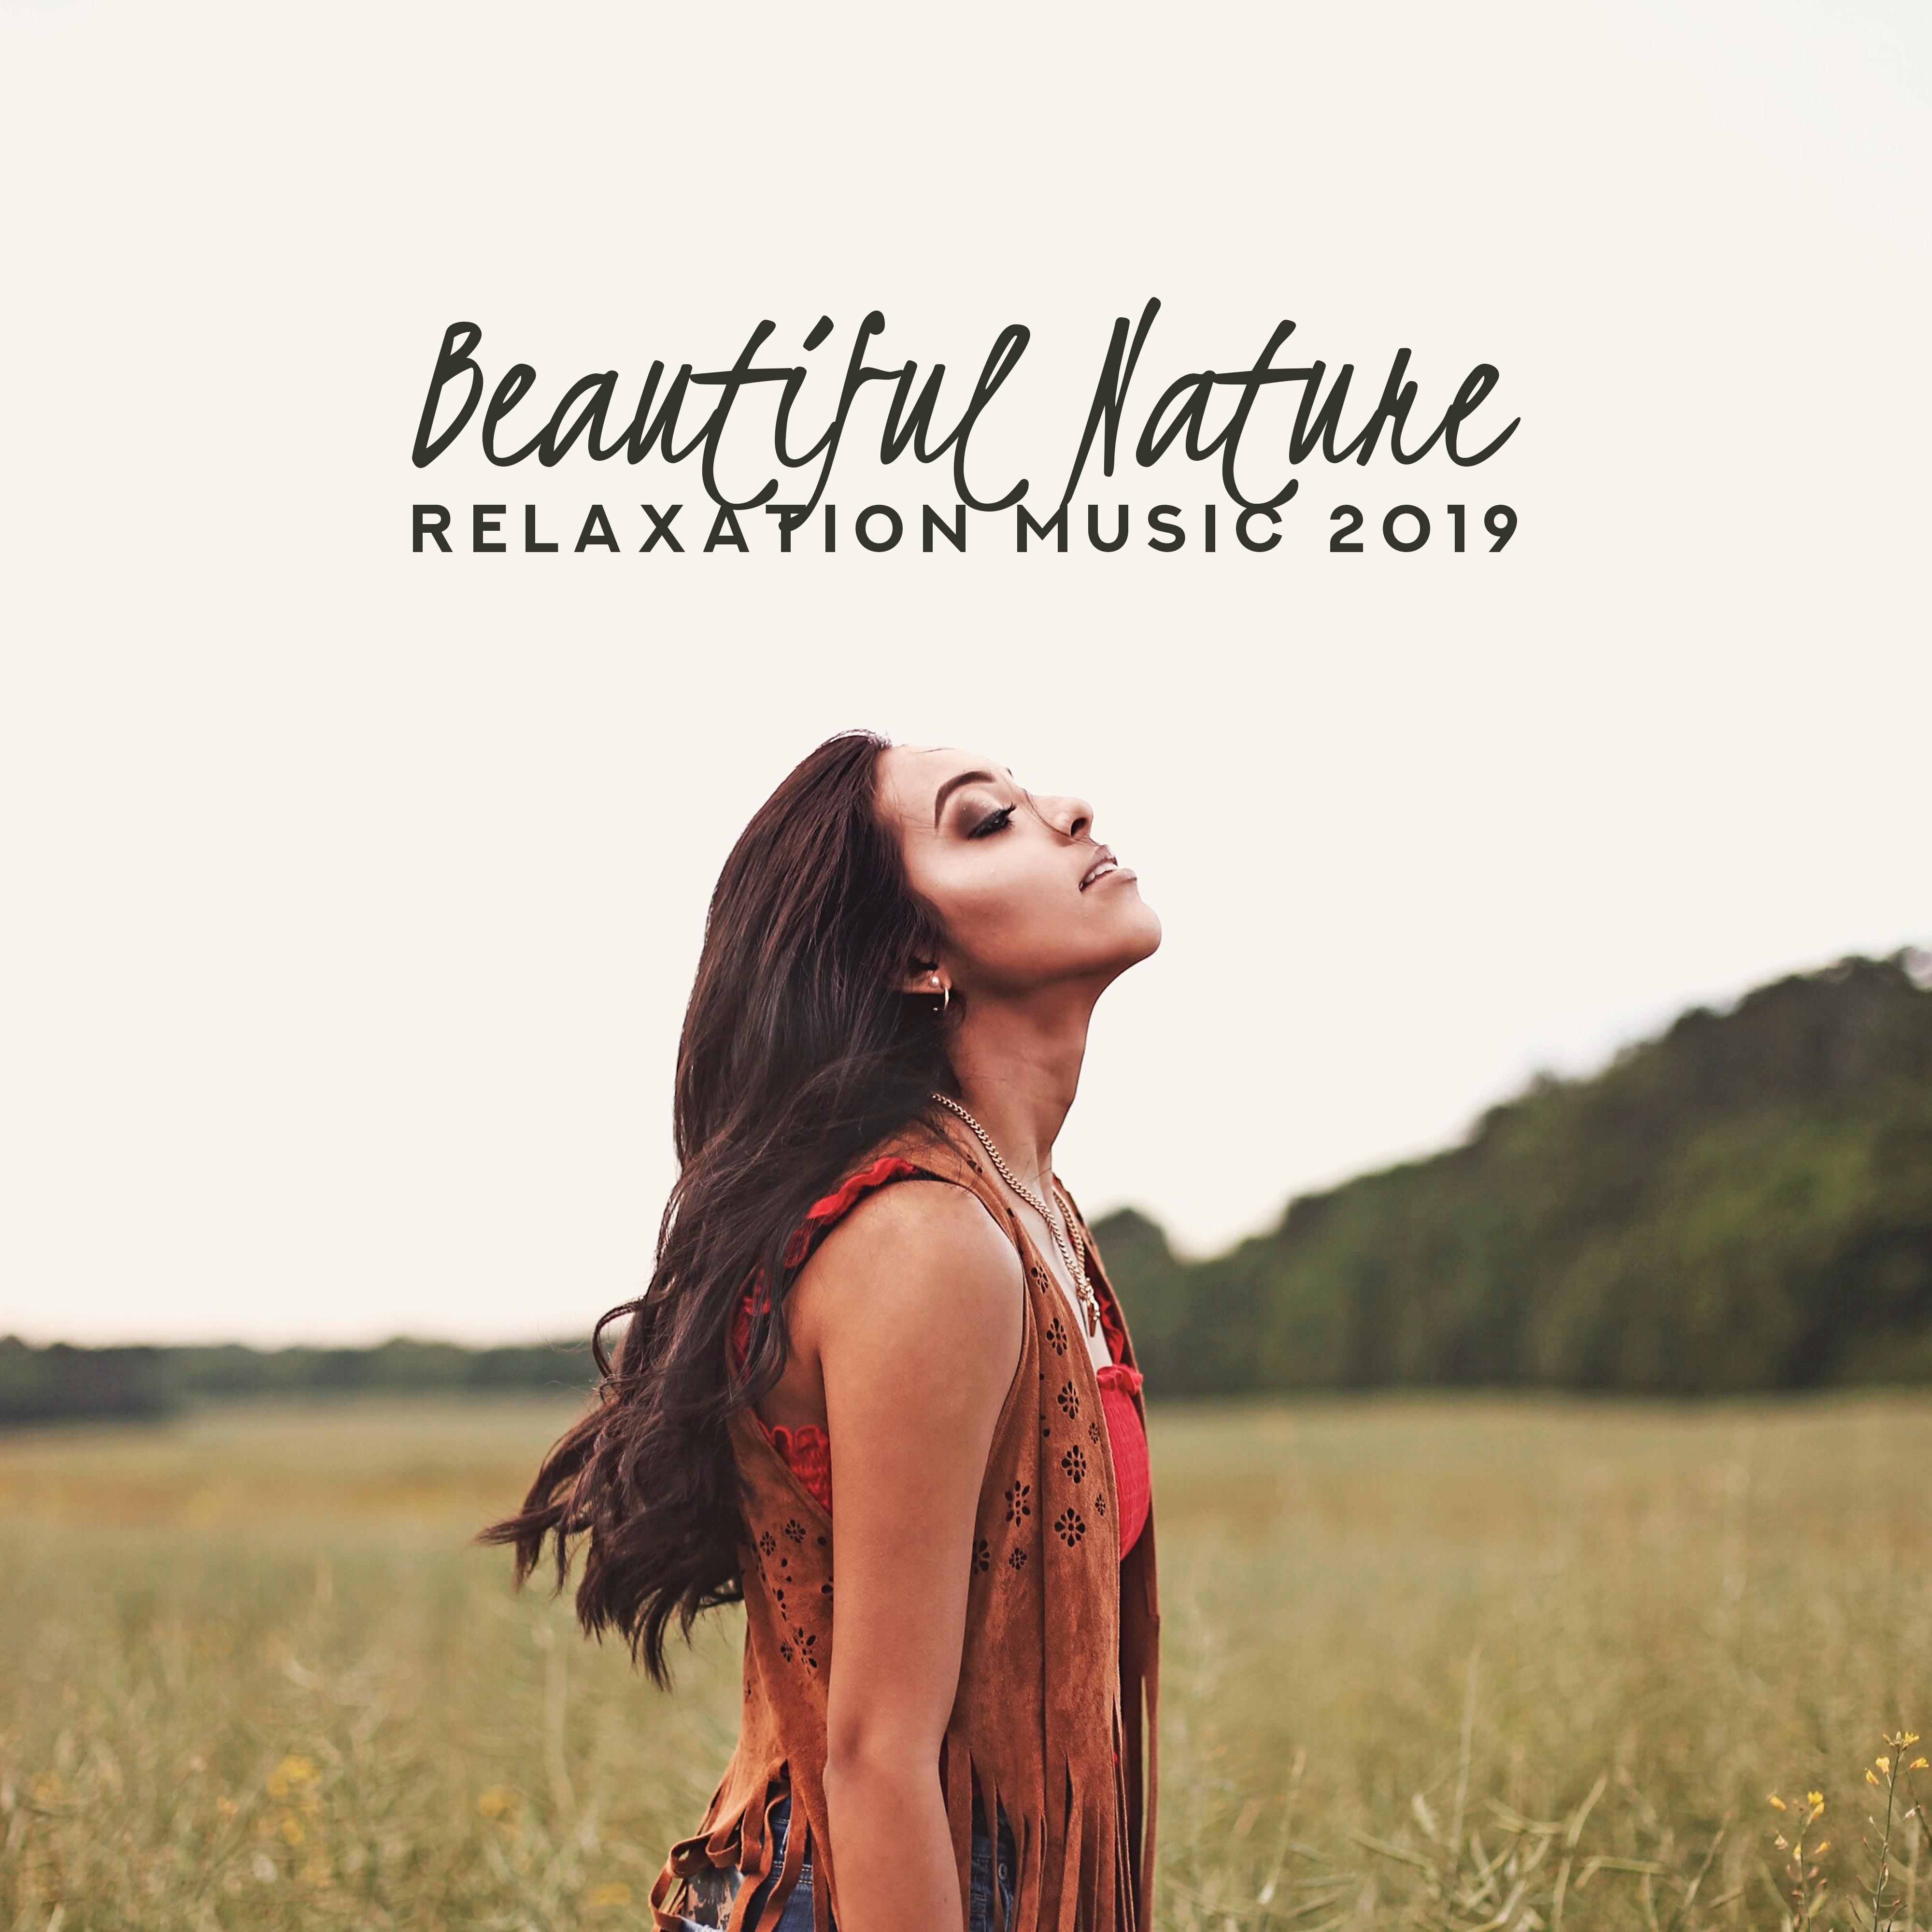 Beautiful Nature Relaxation Music 2019